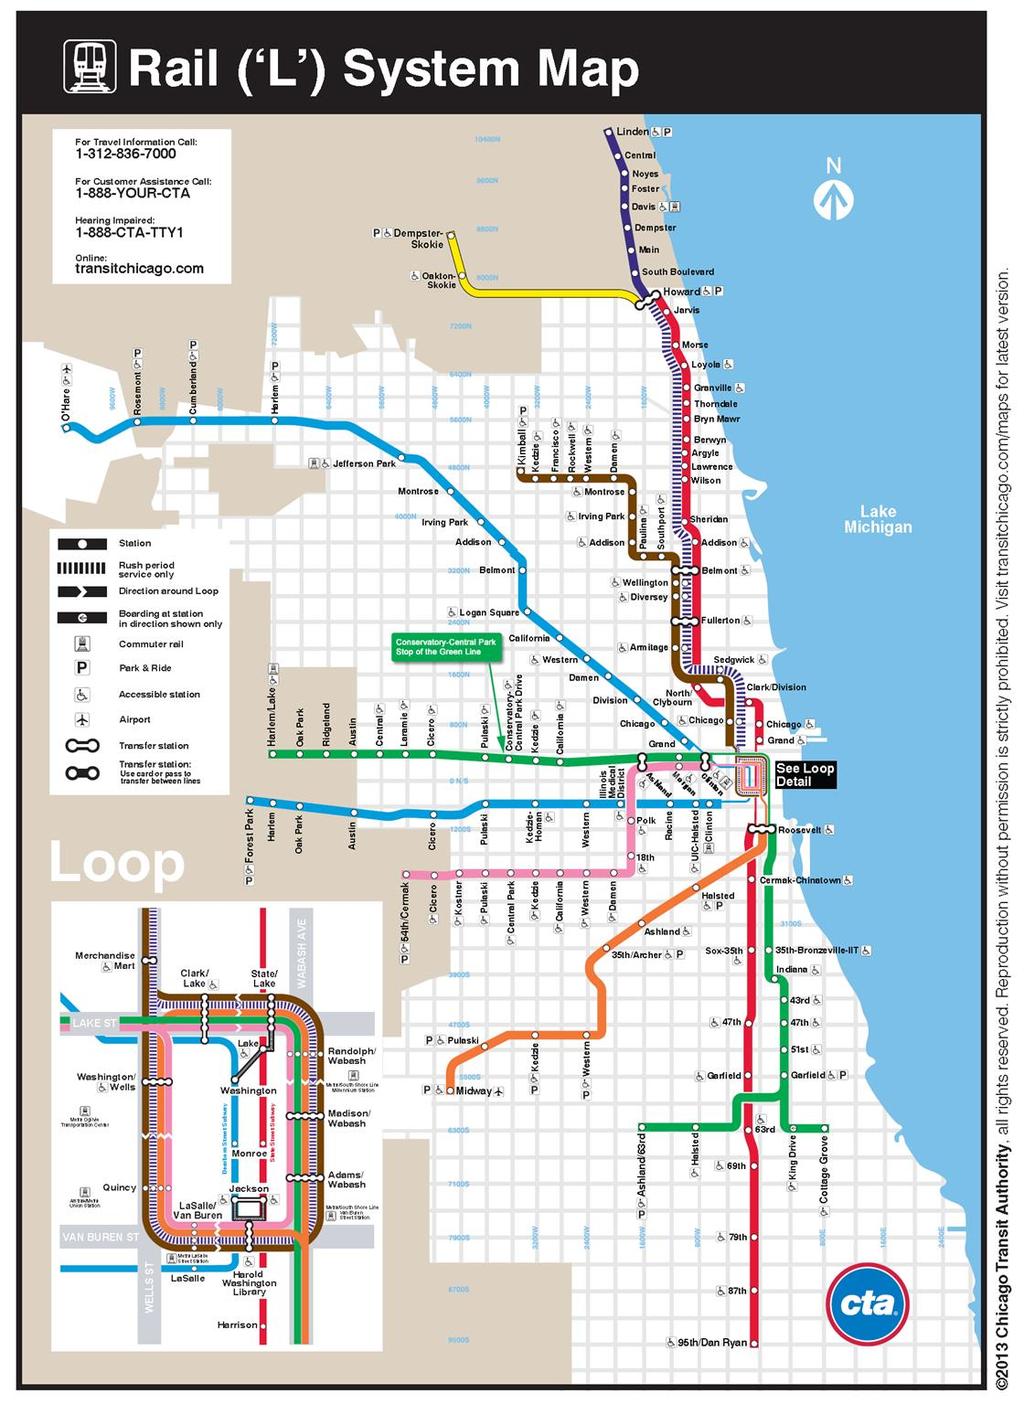 Trains Purple: Linden to Loop Red:95th to Howard Brown:Kimball to Loop Orange: Midway to Loop